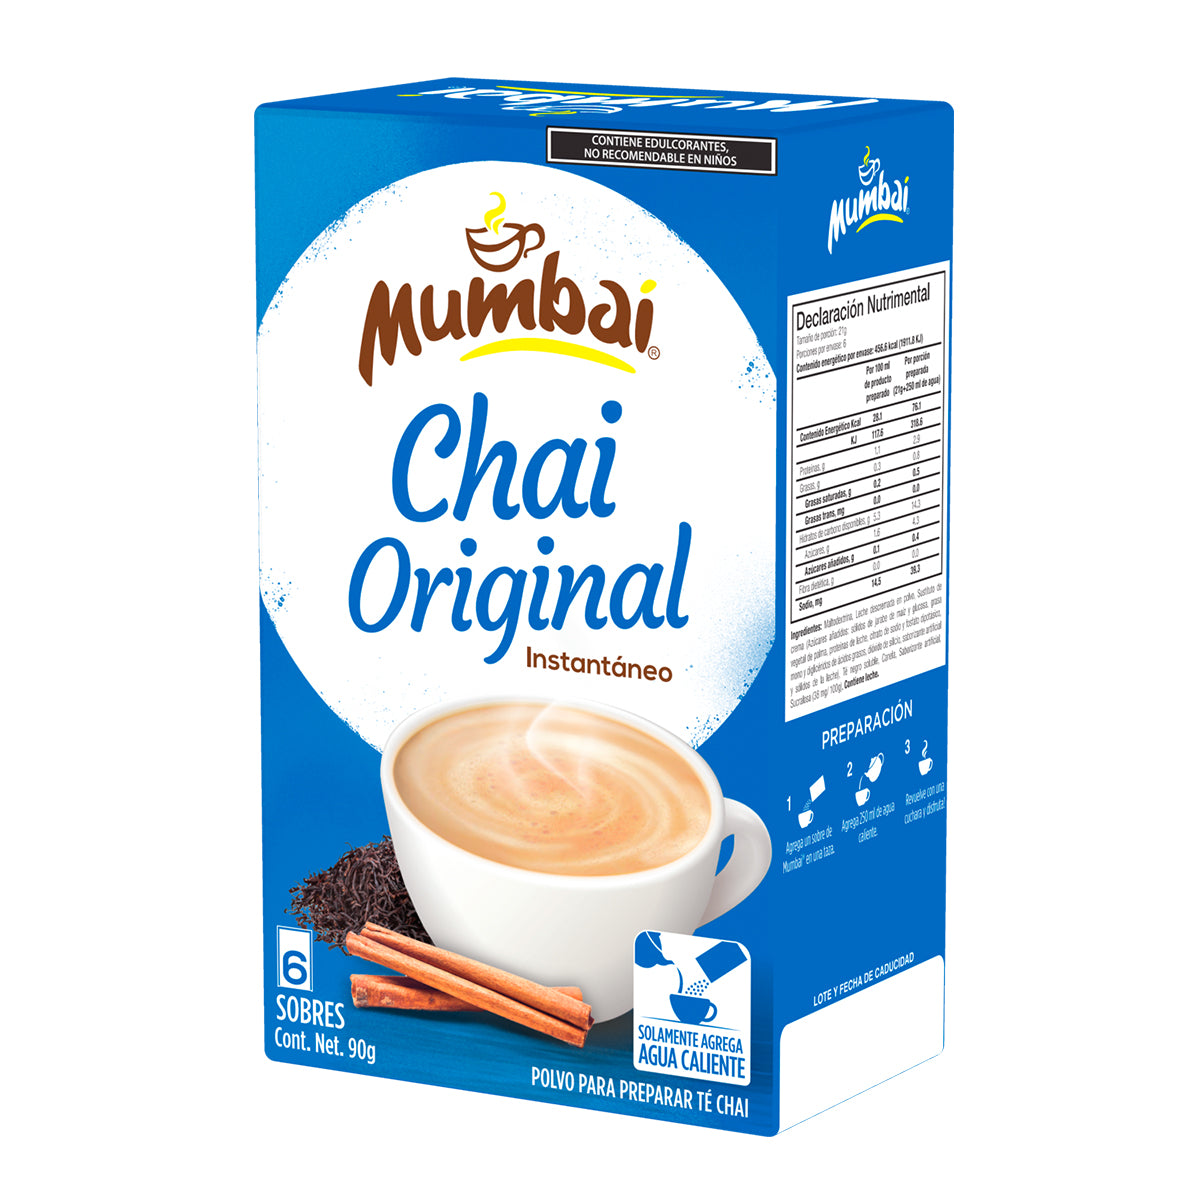 Mumbai Té Chai Original 6 sobres